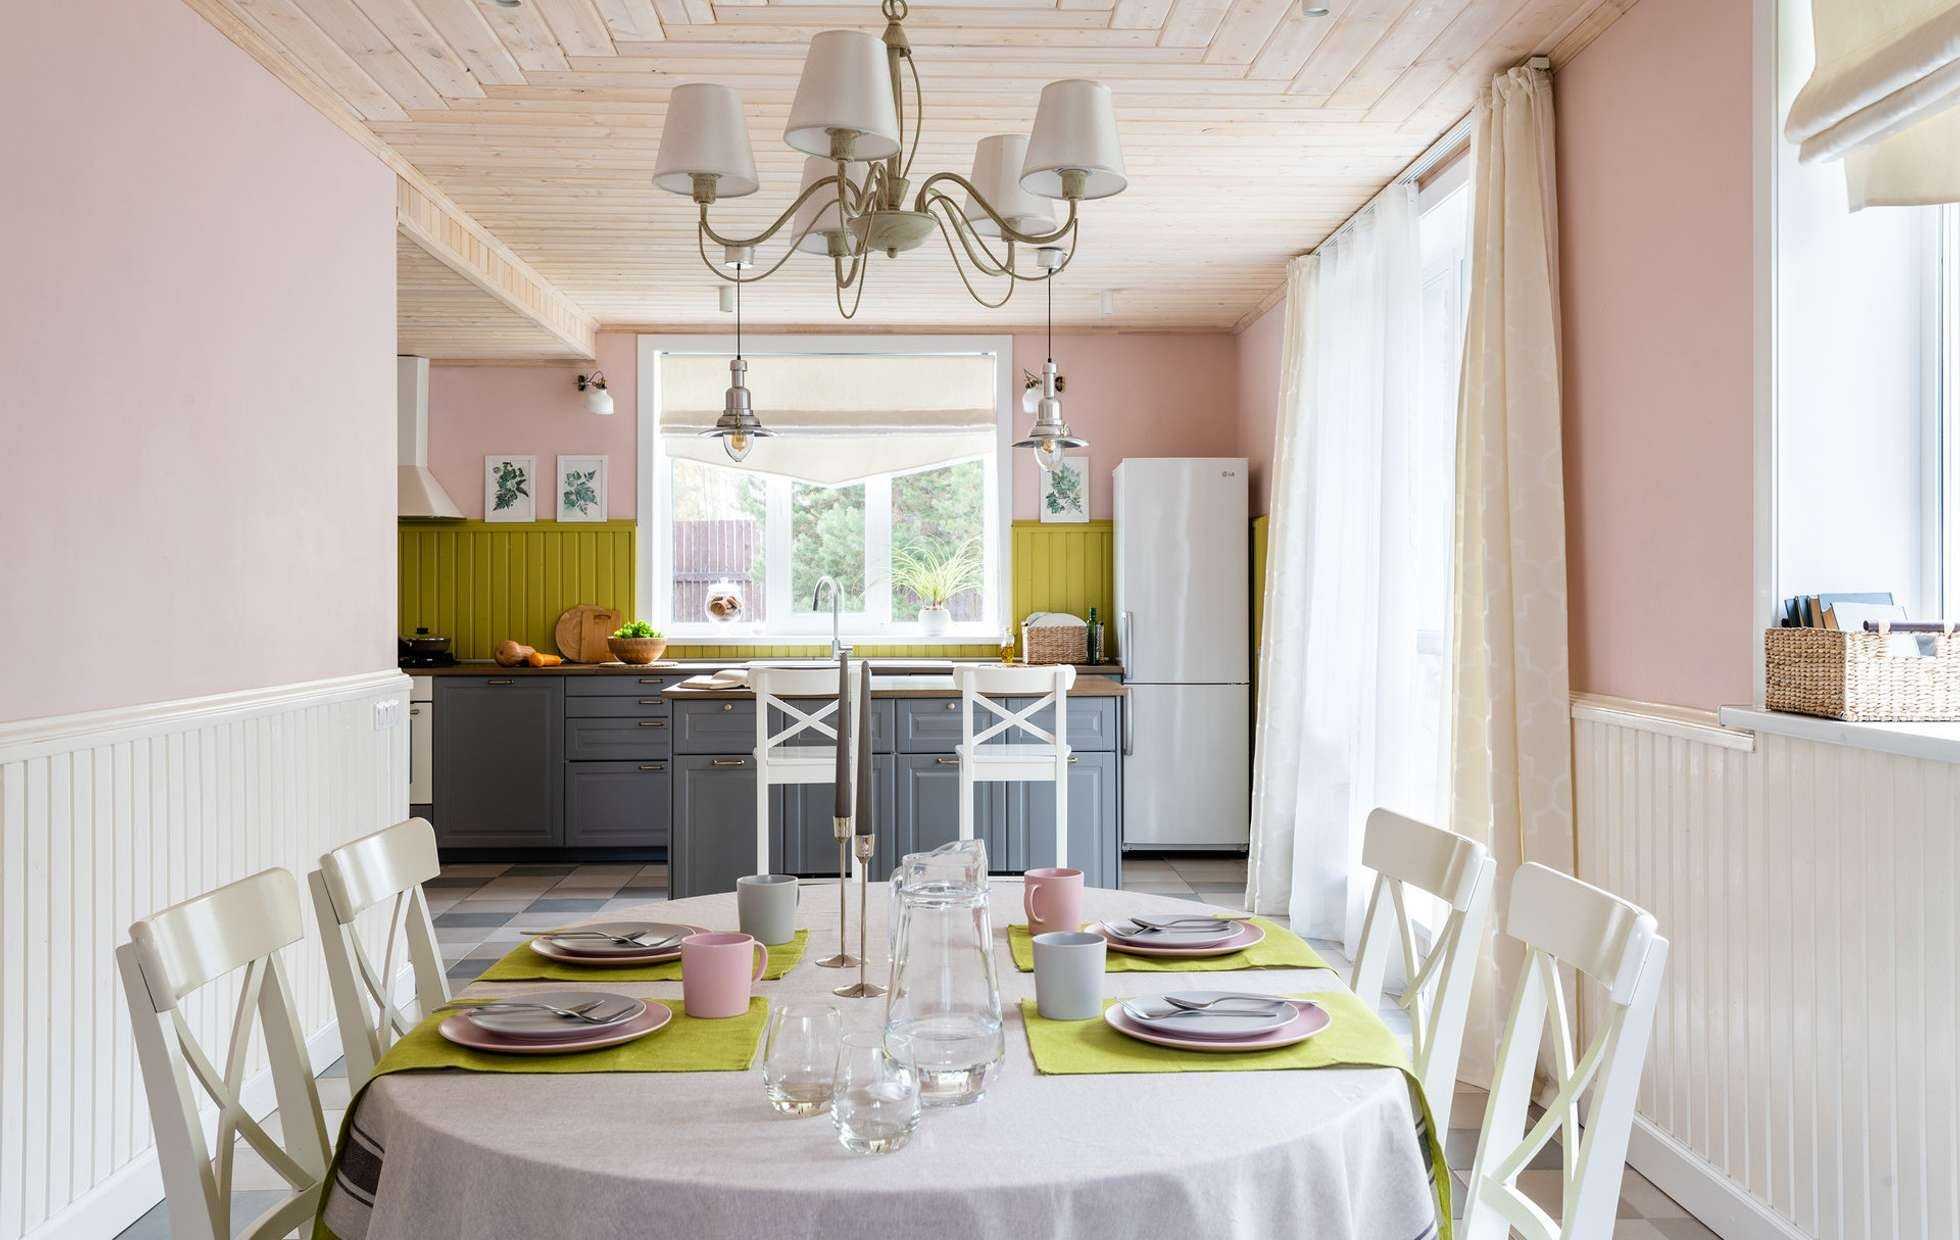 Вагонка в интерьере кухни, покрытие краской или лаком, выбор стиля